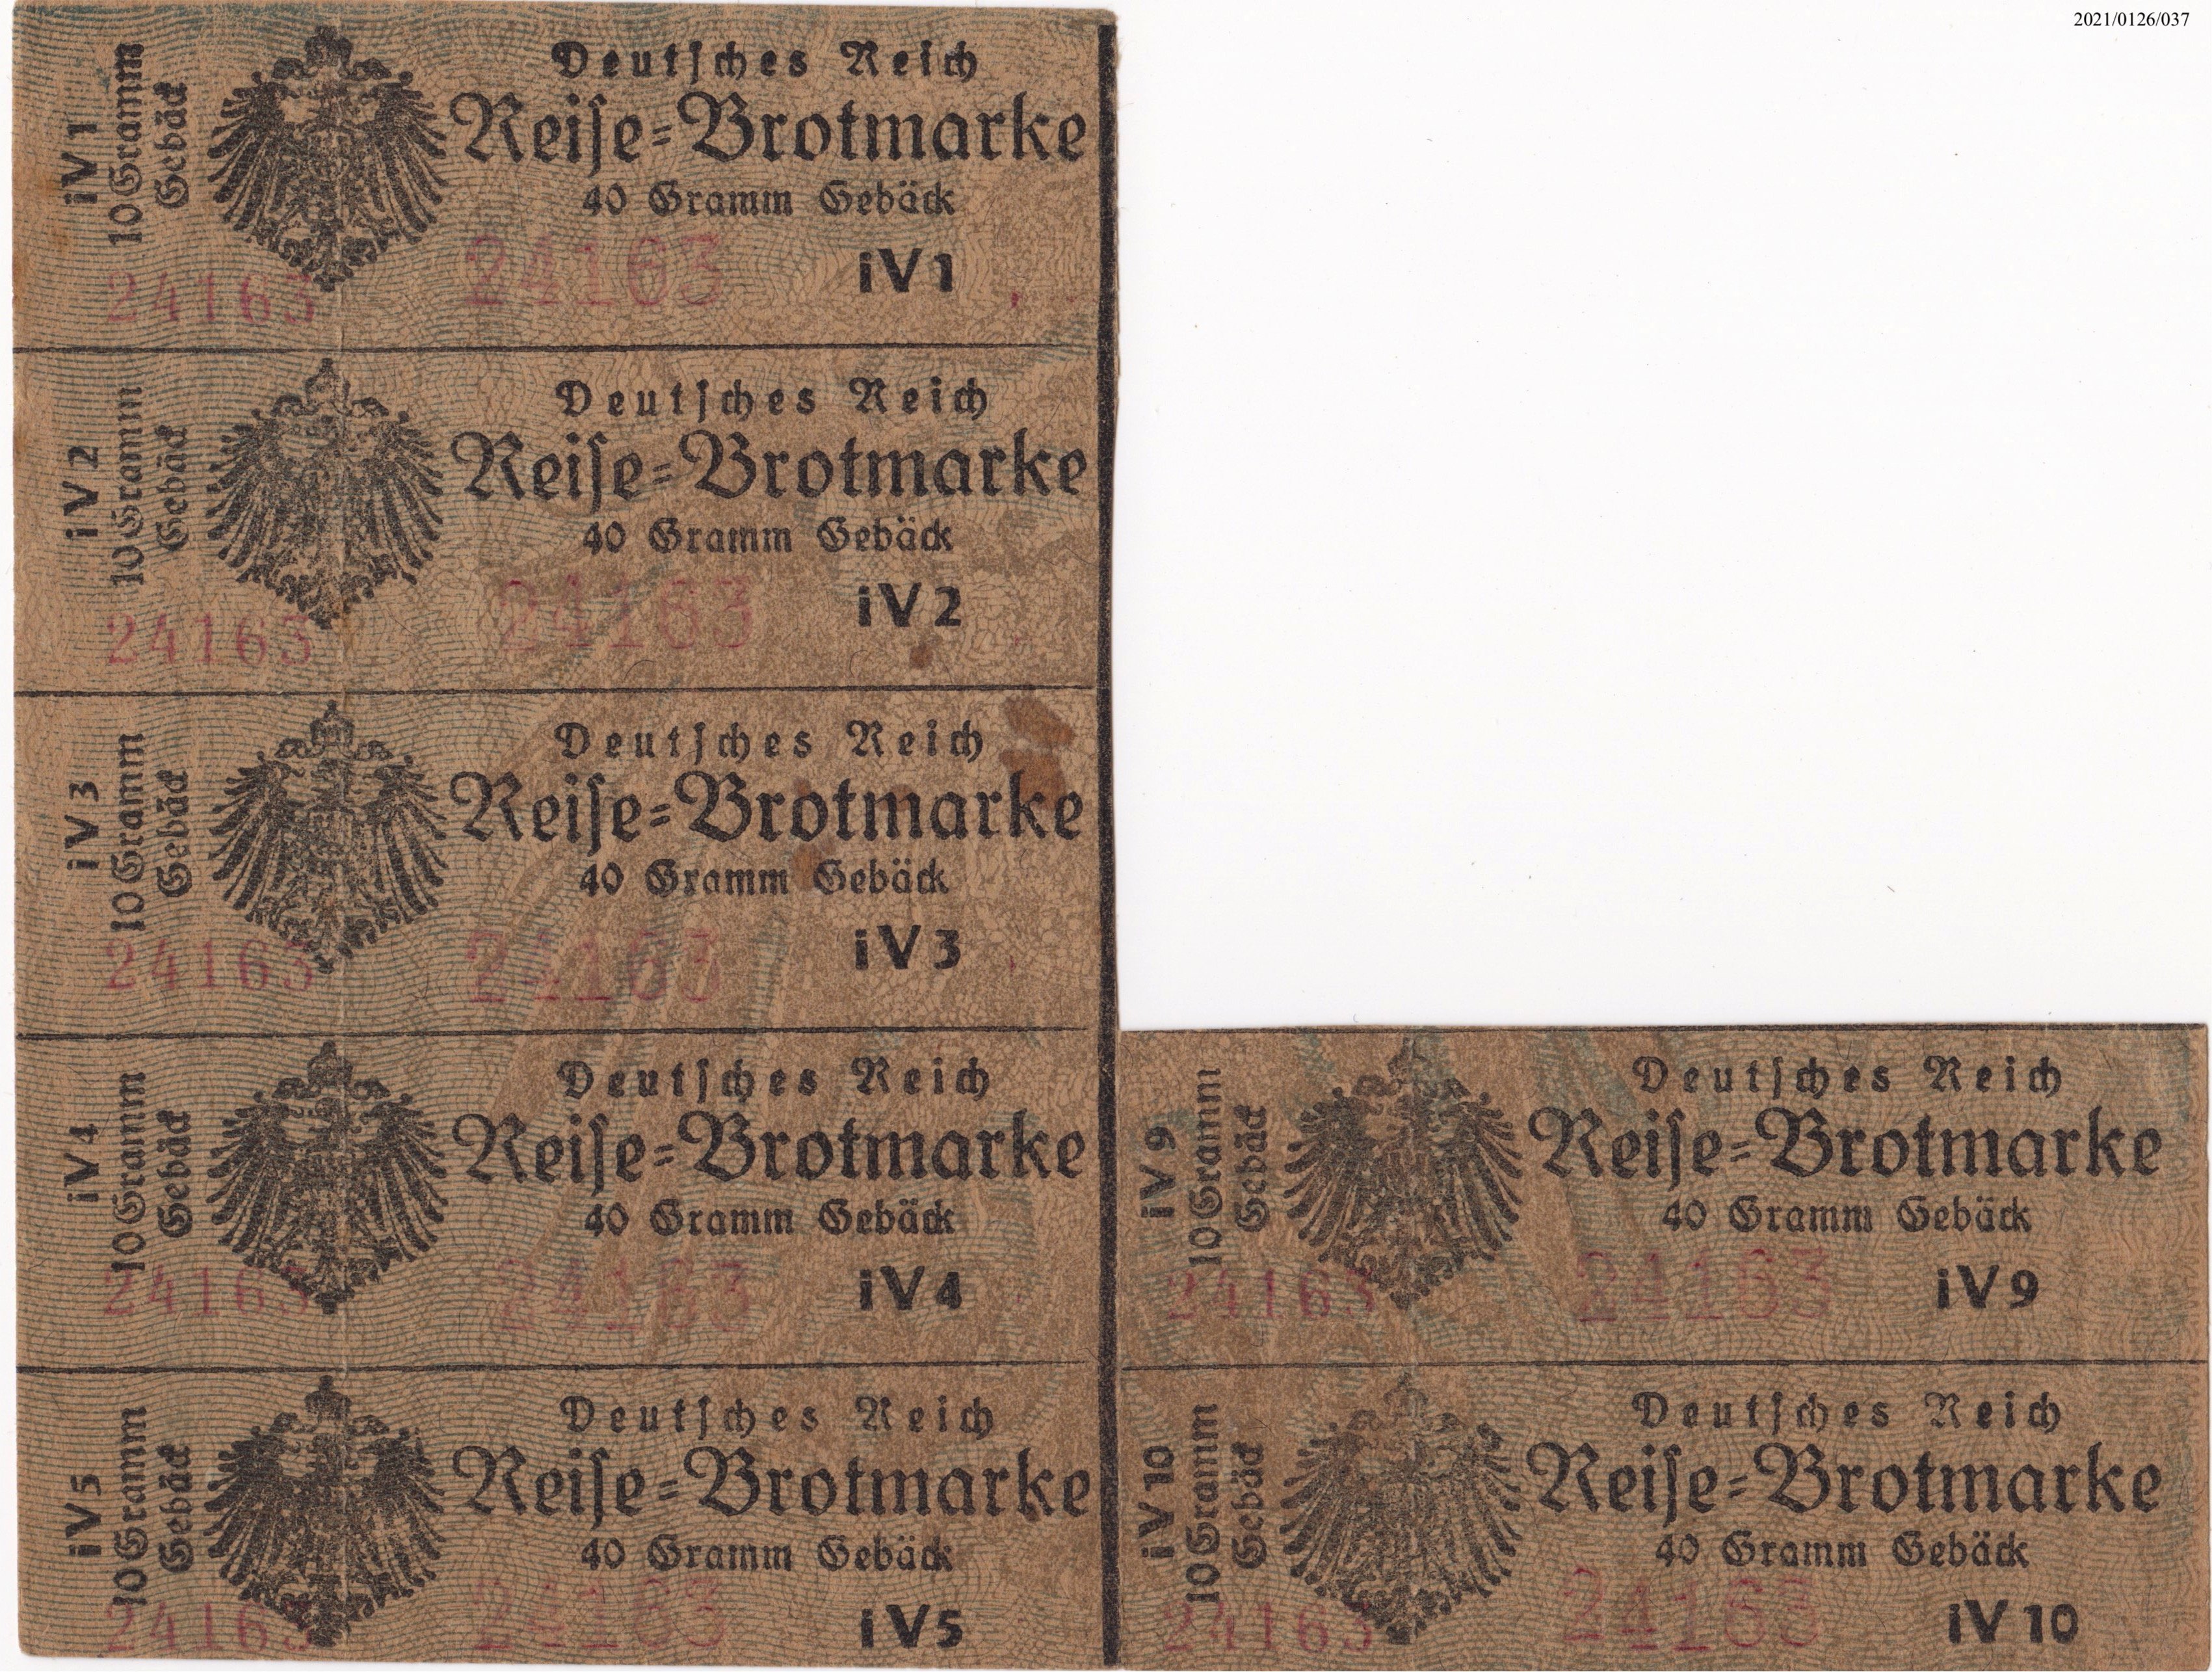 40 Gramm Gebäck Deutsches Reich Reisebrotmarke 1918 selten! für jeweils 10 